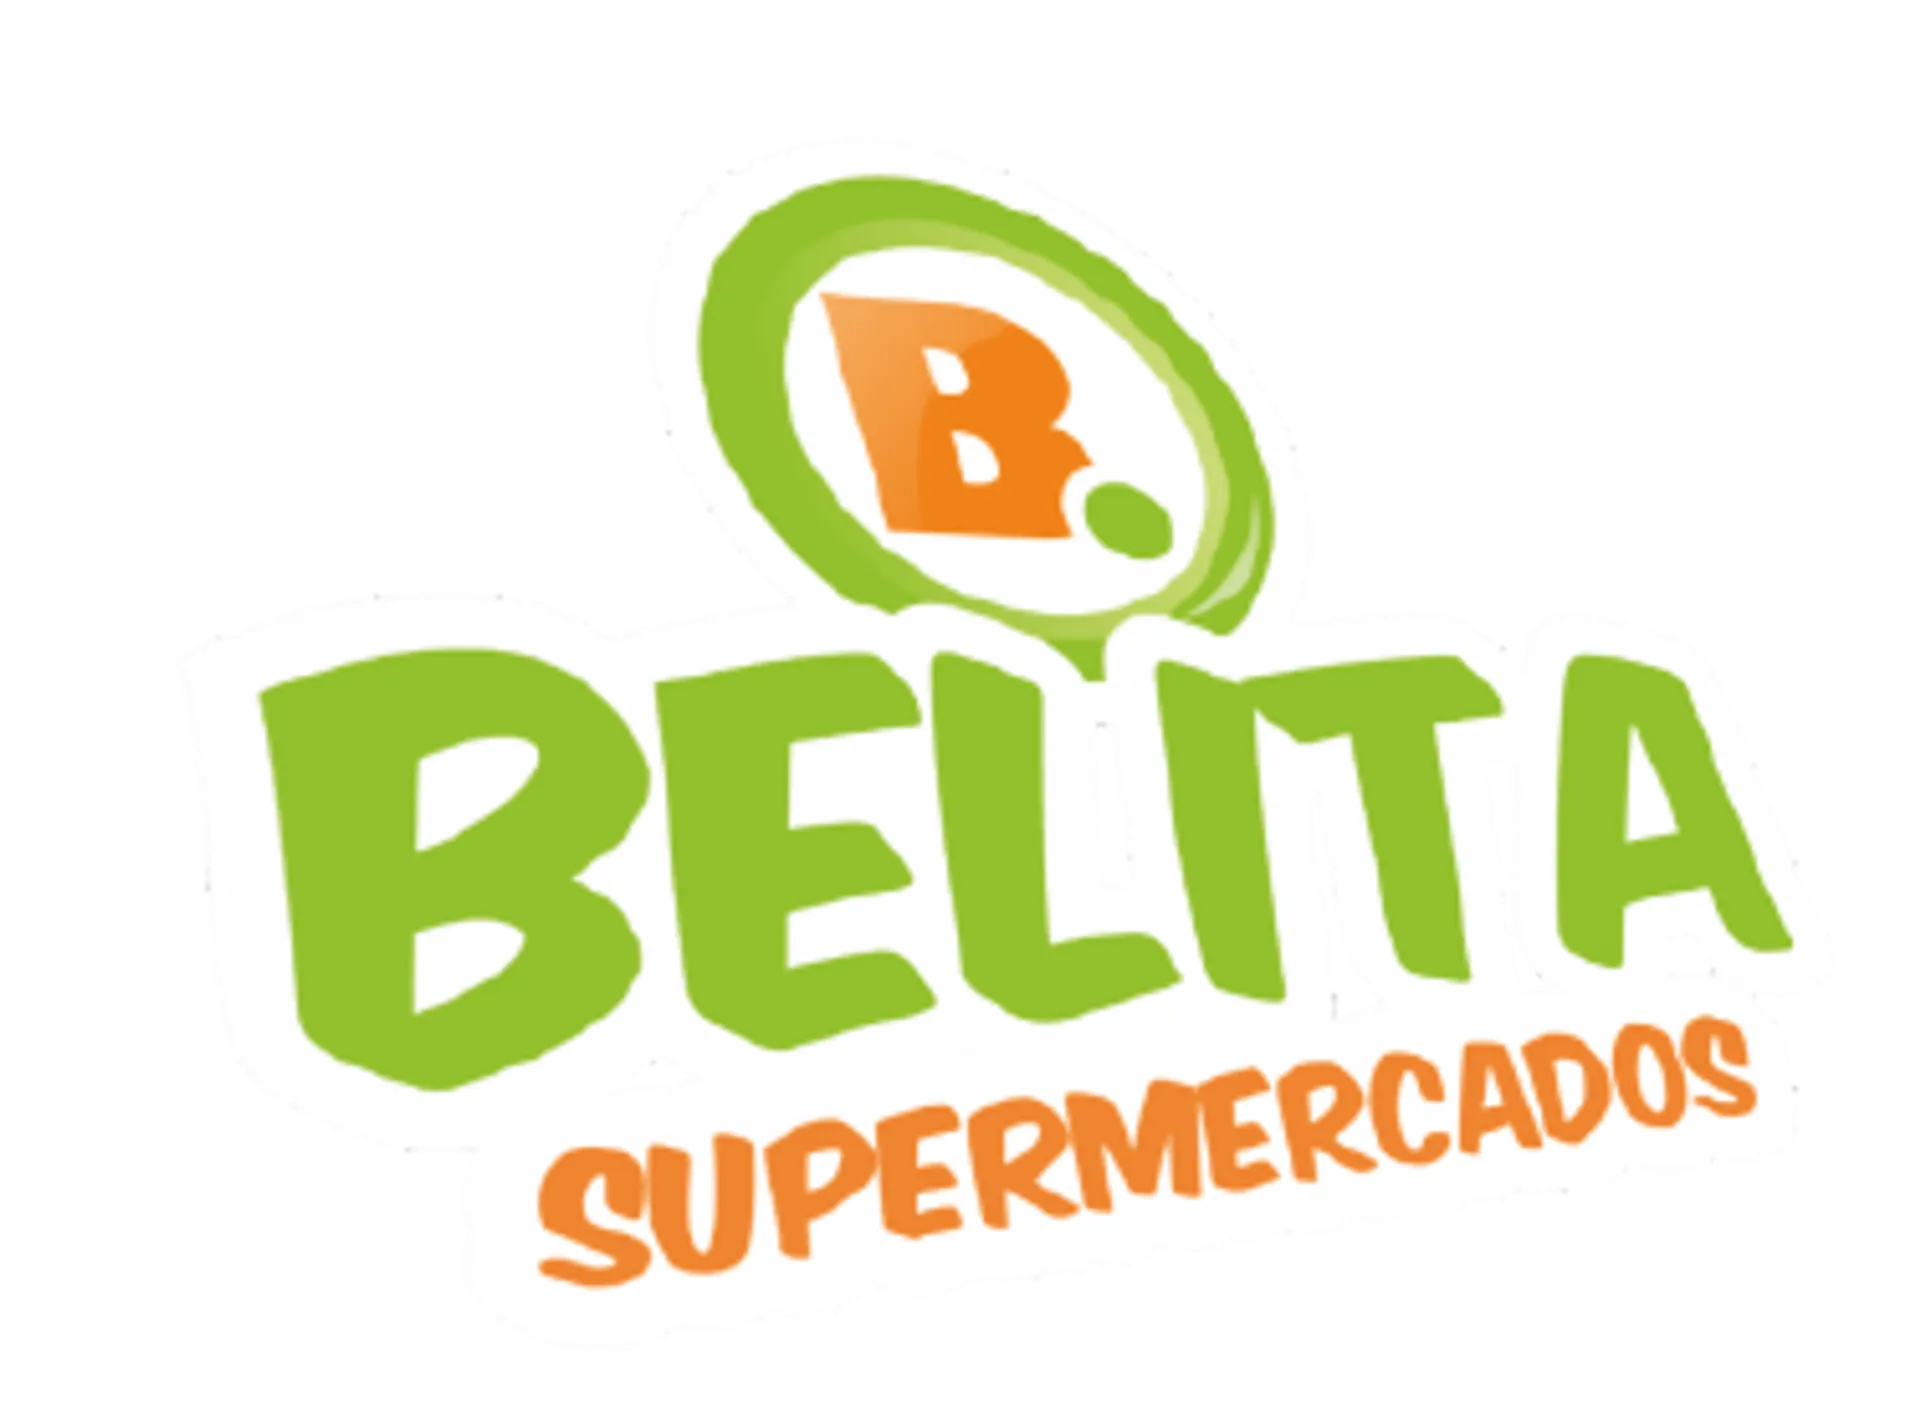 Belita Supermercados logo